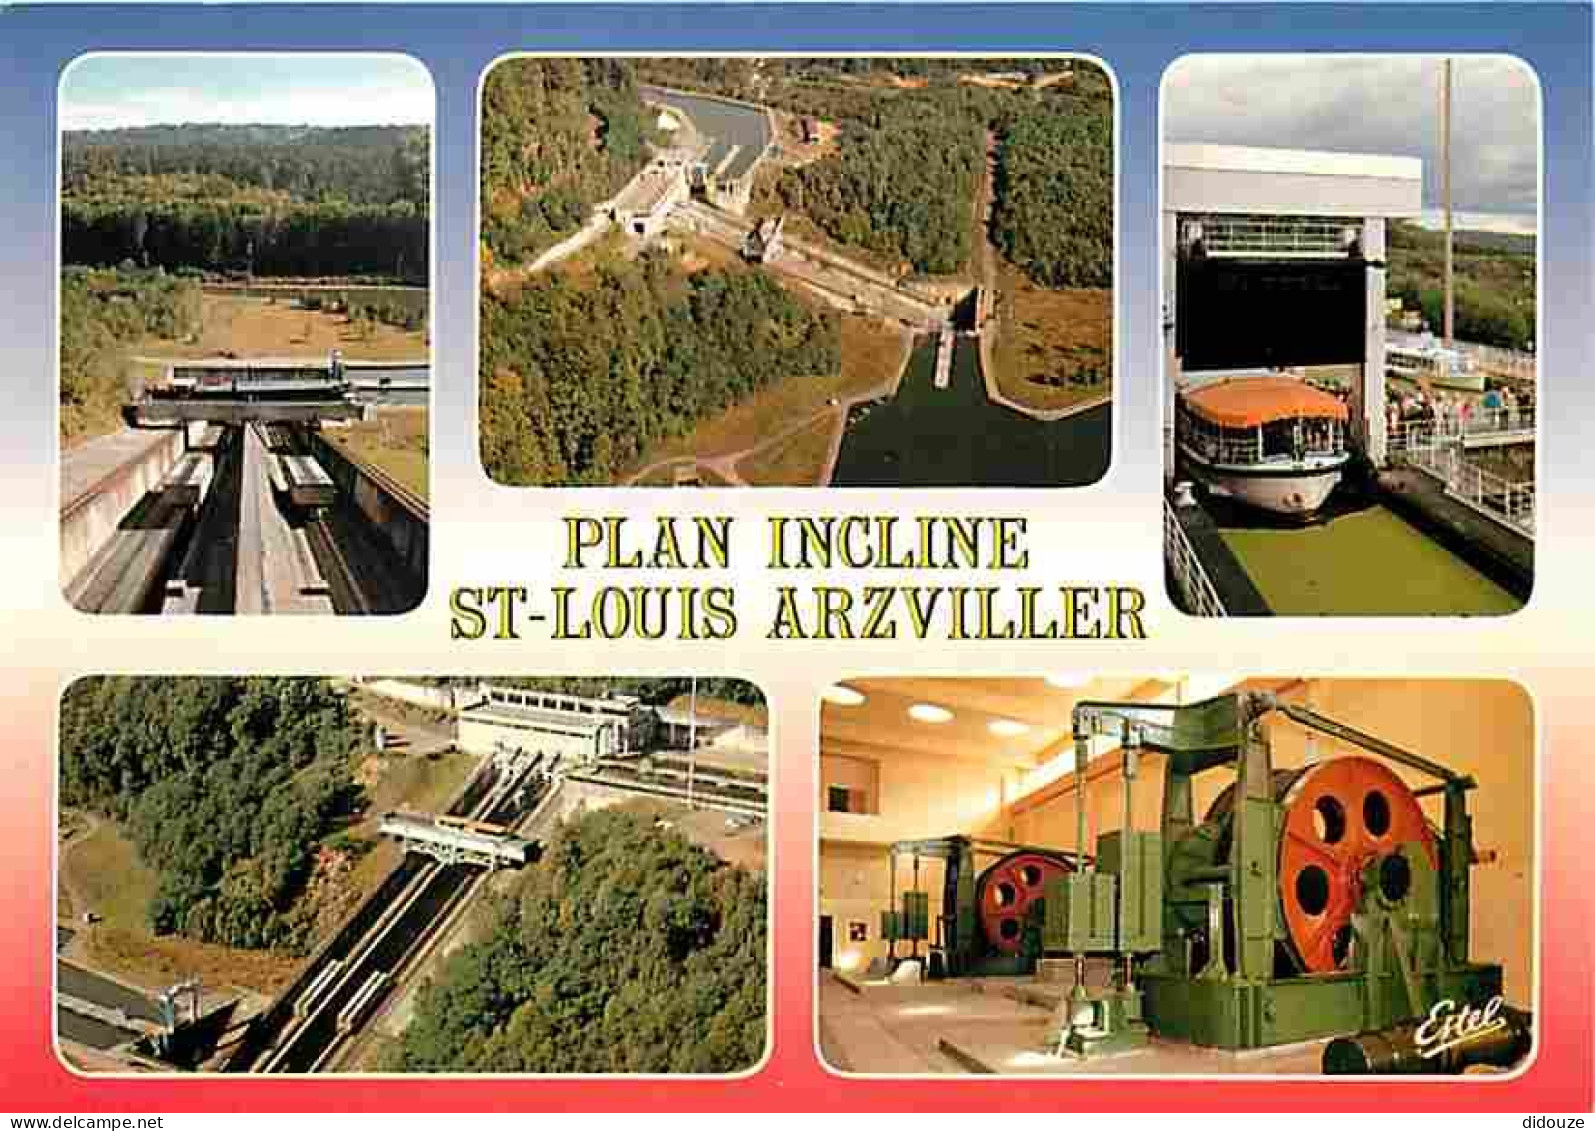 57 - Saint Louis - Arzviller - Le Plan Incliné Transversal - Ascenseur à Bateaux - Multivues - CPM - Voir Scans Recto-Ve - Arzviller